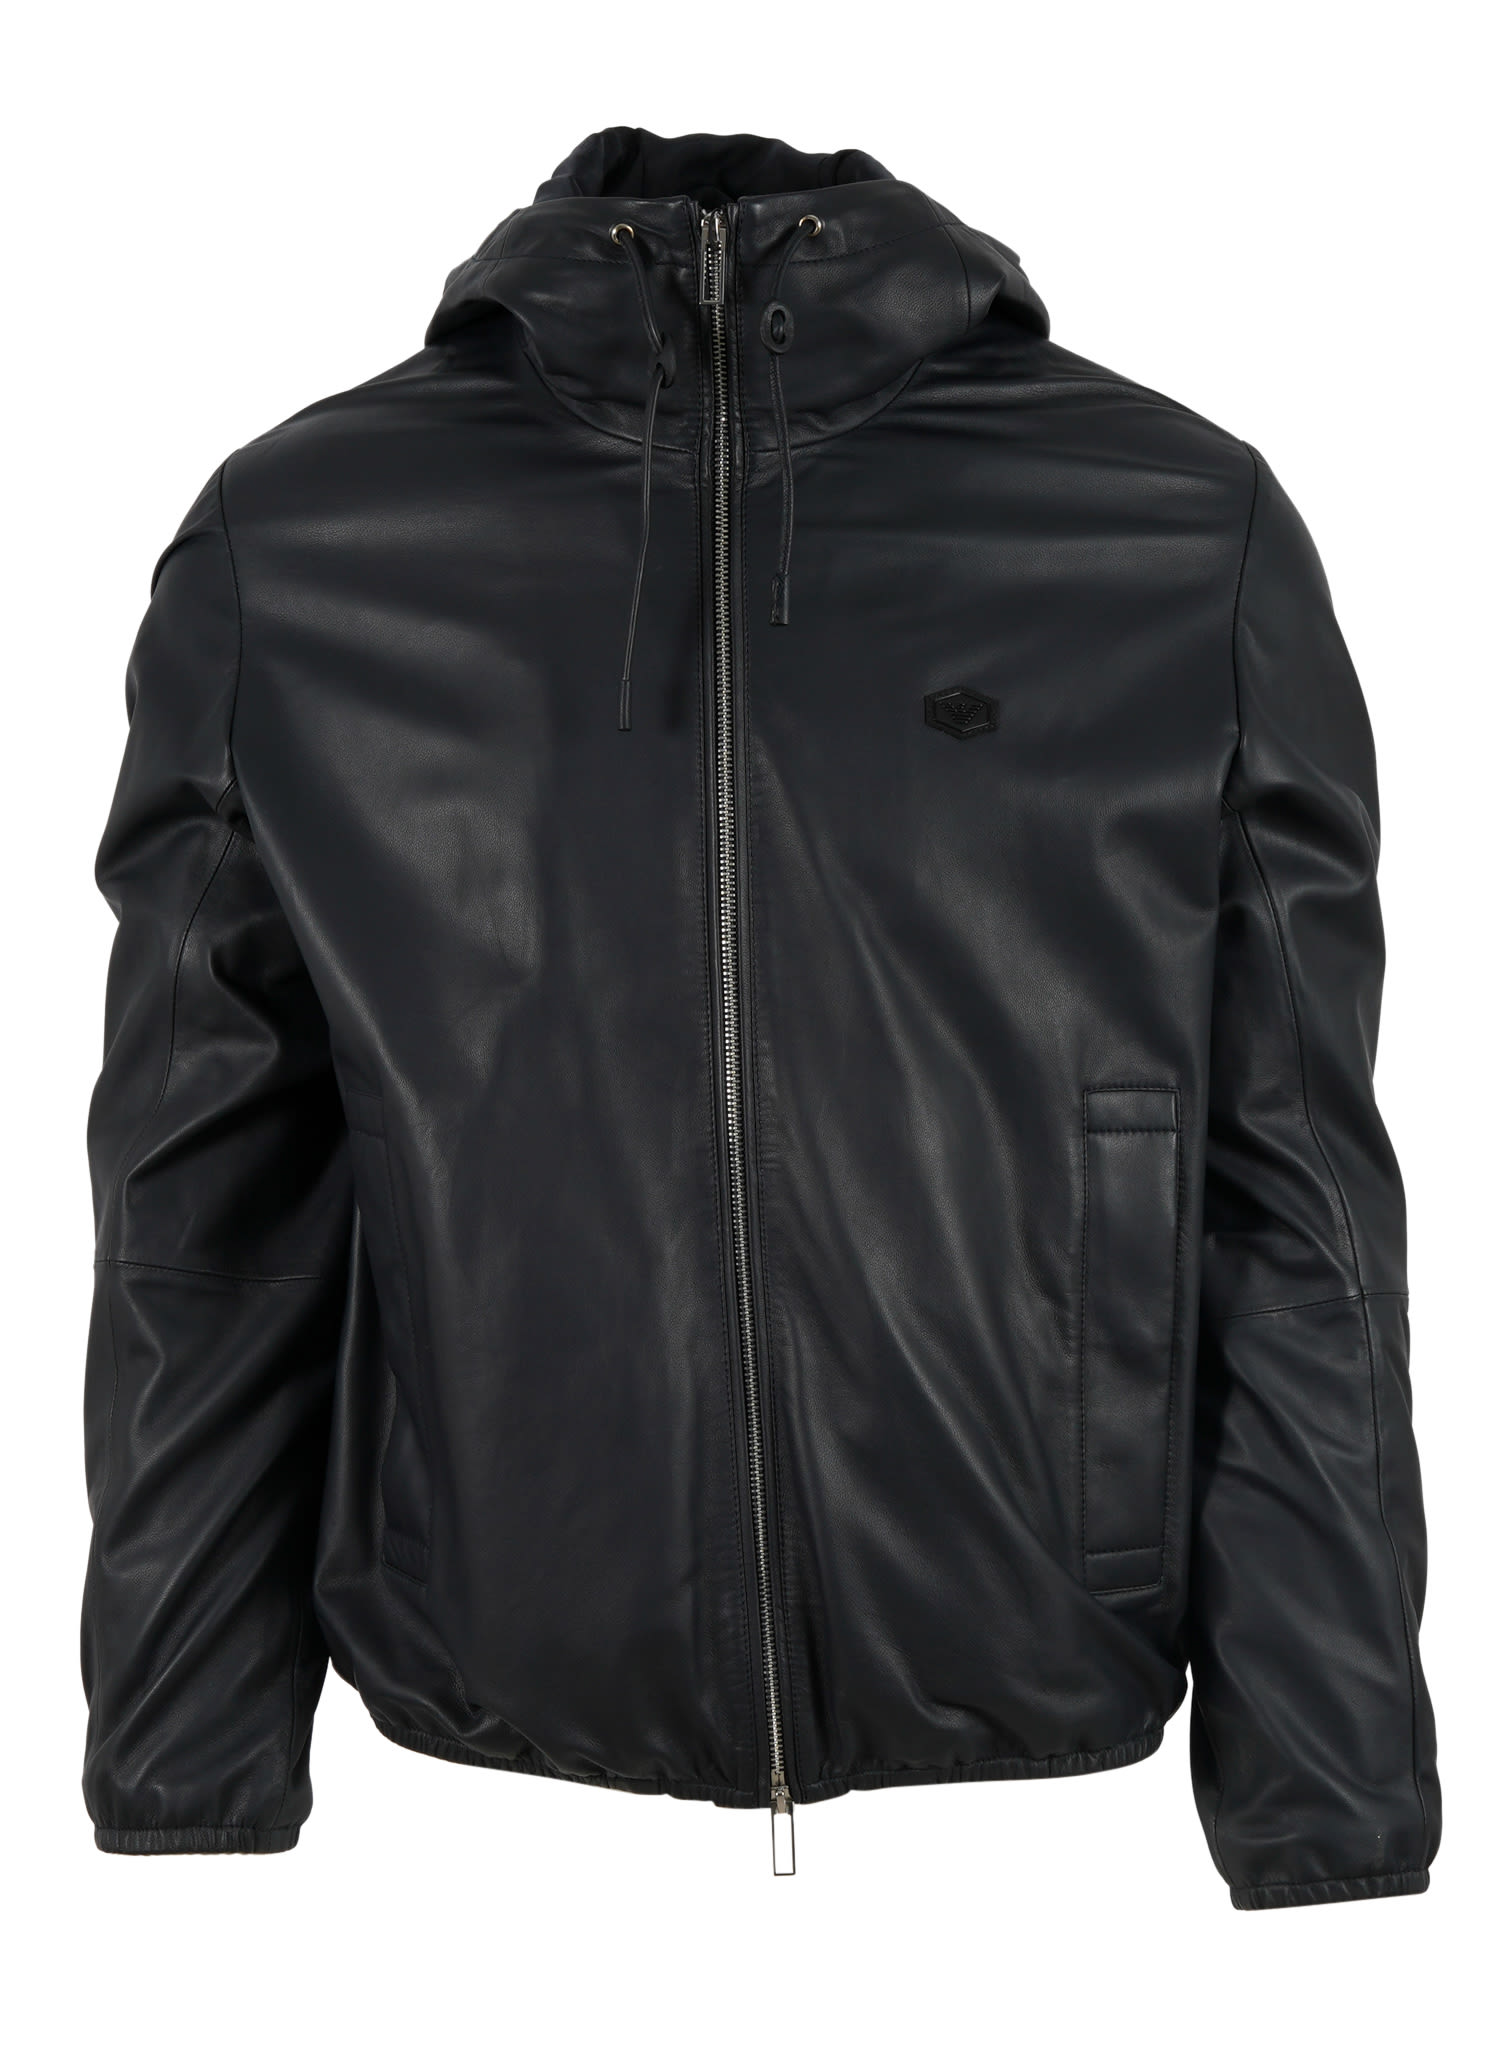 Emporio Armani Blouson Leather Jacket